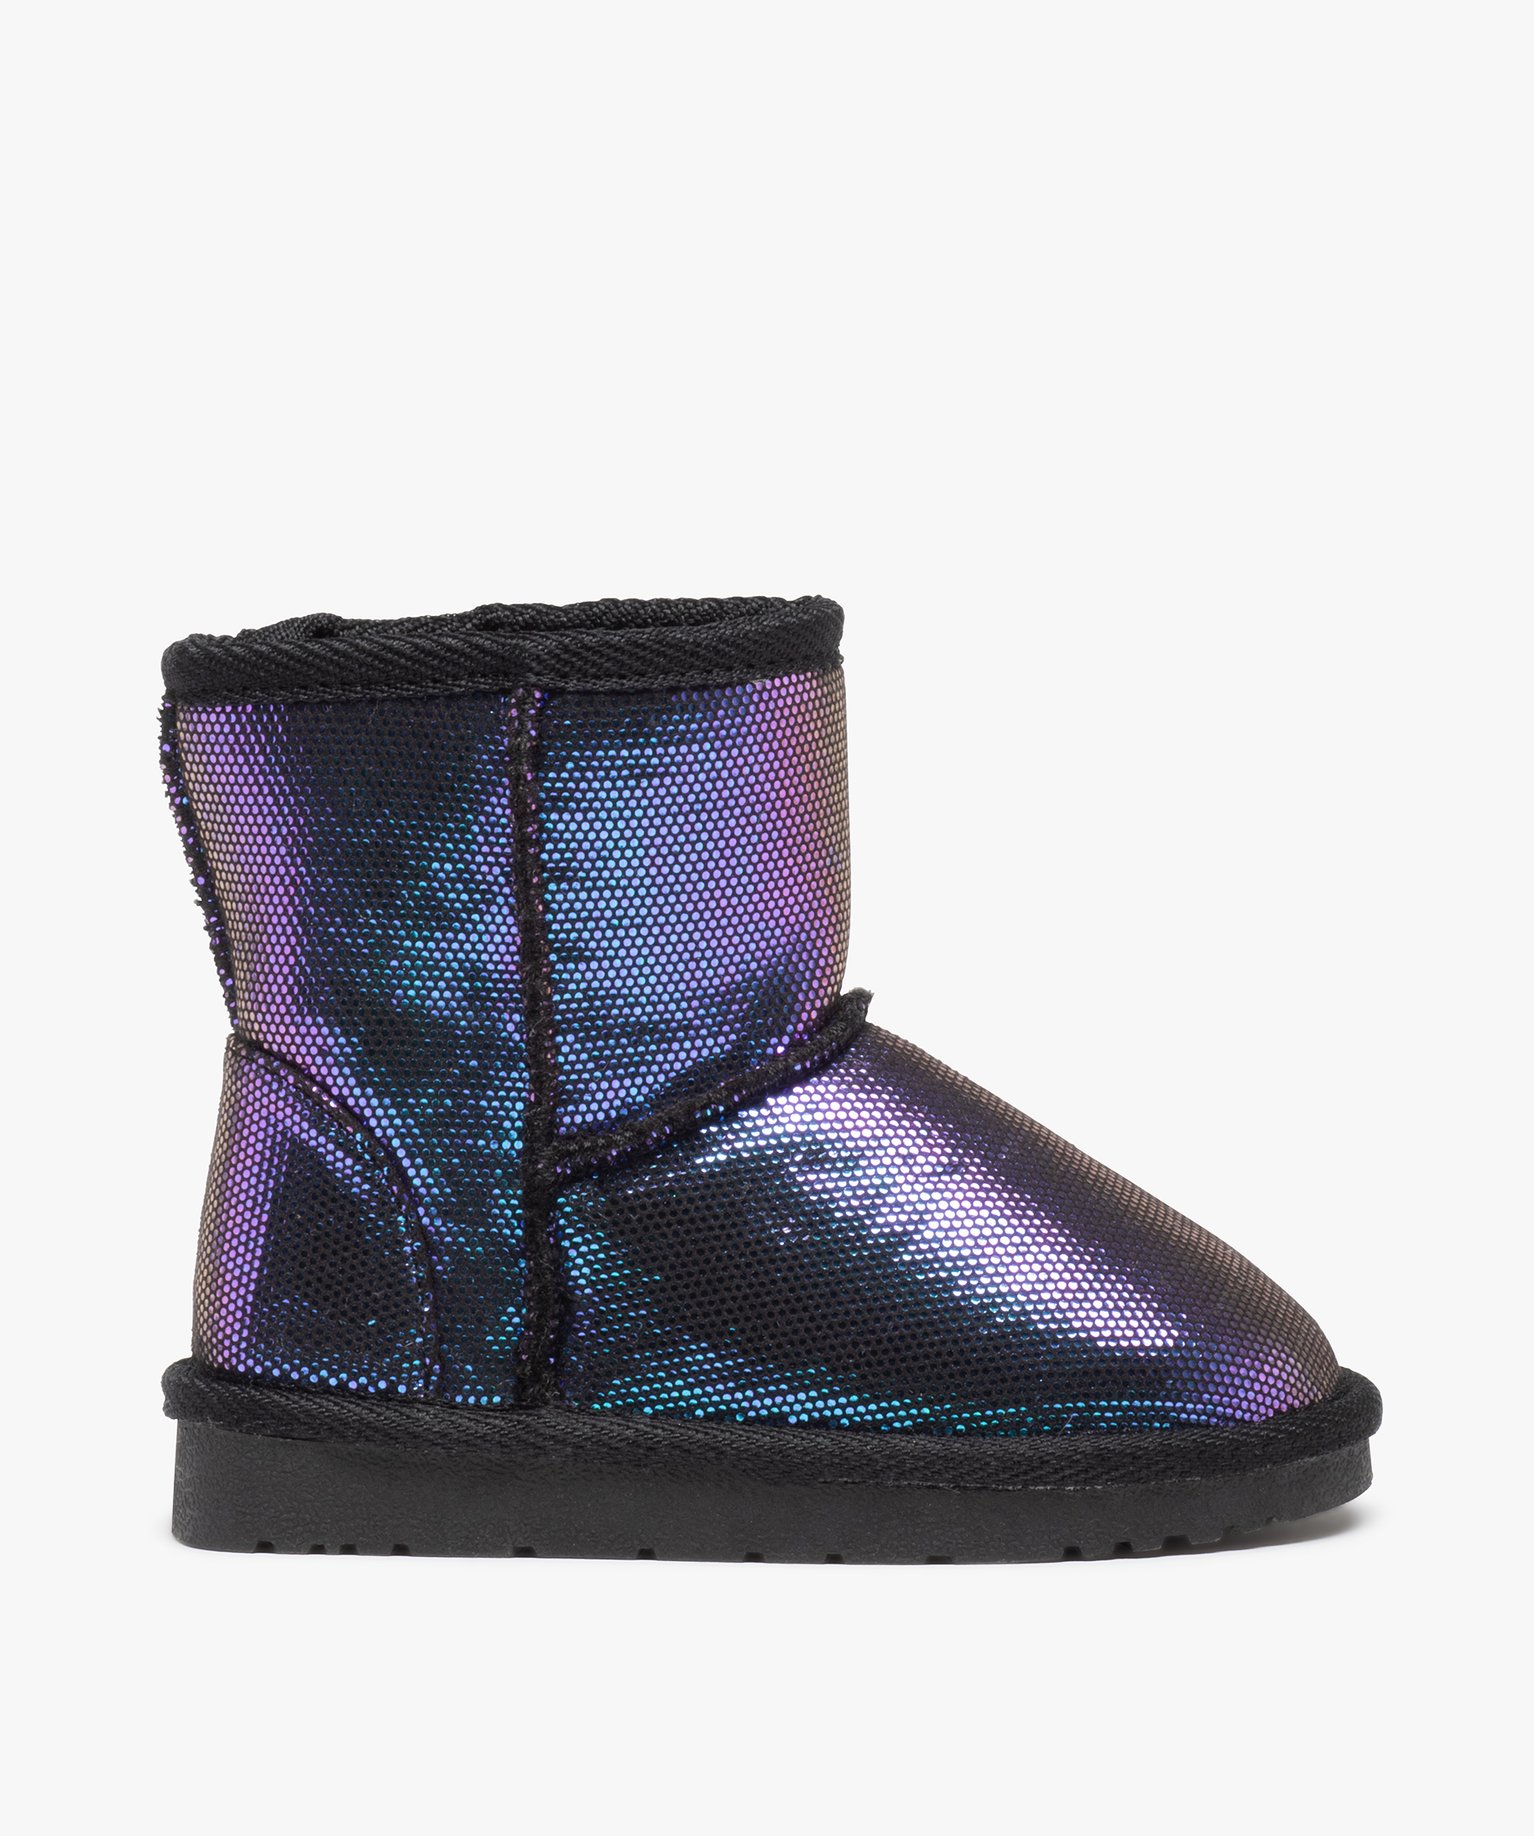 Boots fourrées fille en suédine brillante et irisée violet - 33 - GEMO